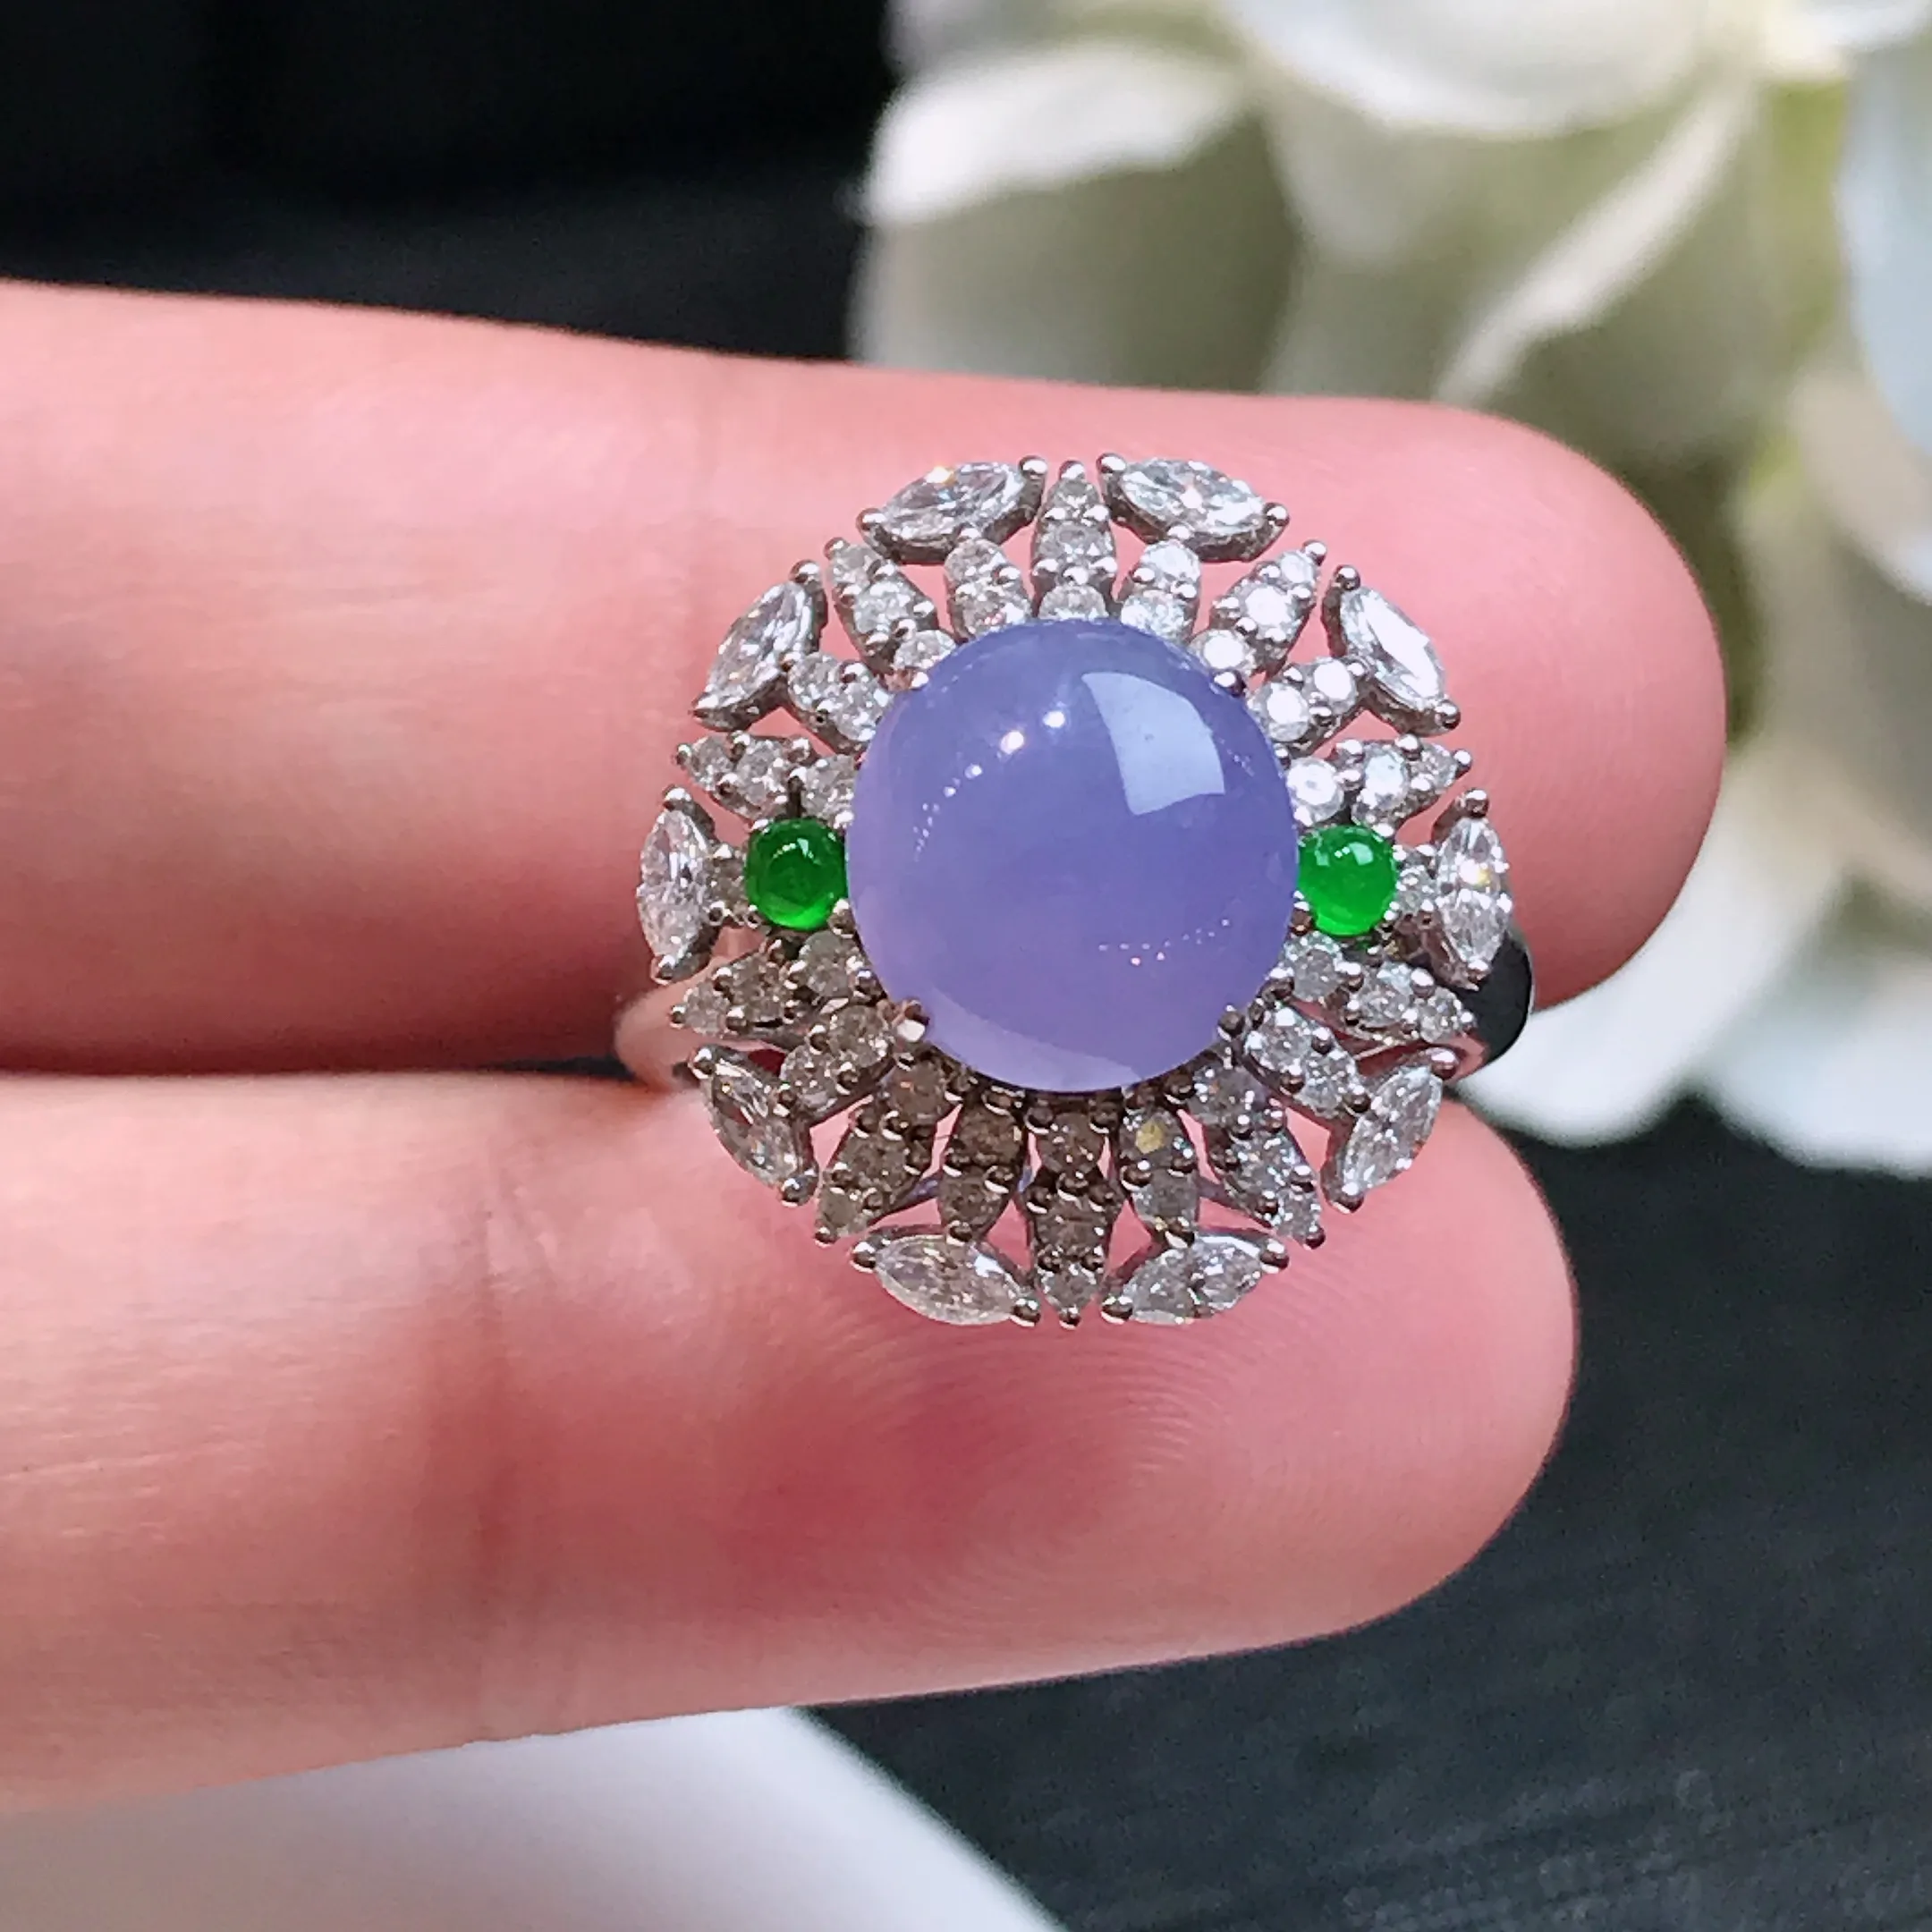 严选推荐戒指，老坑冰种紫罗兰戒指，18k金钻镶嵌而成，简约时尚，品相佳，佩戴效果佳，尽显气质。